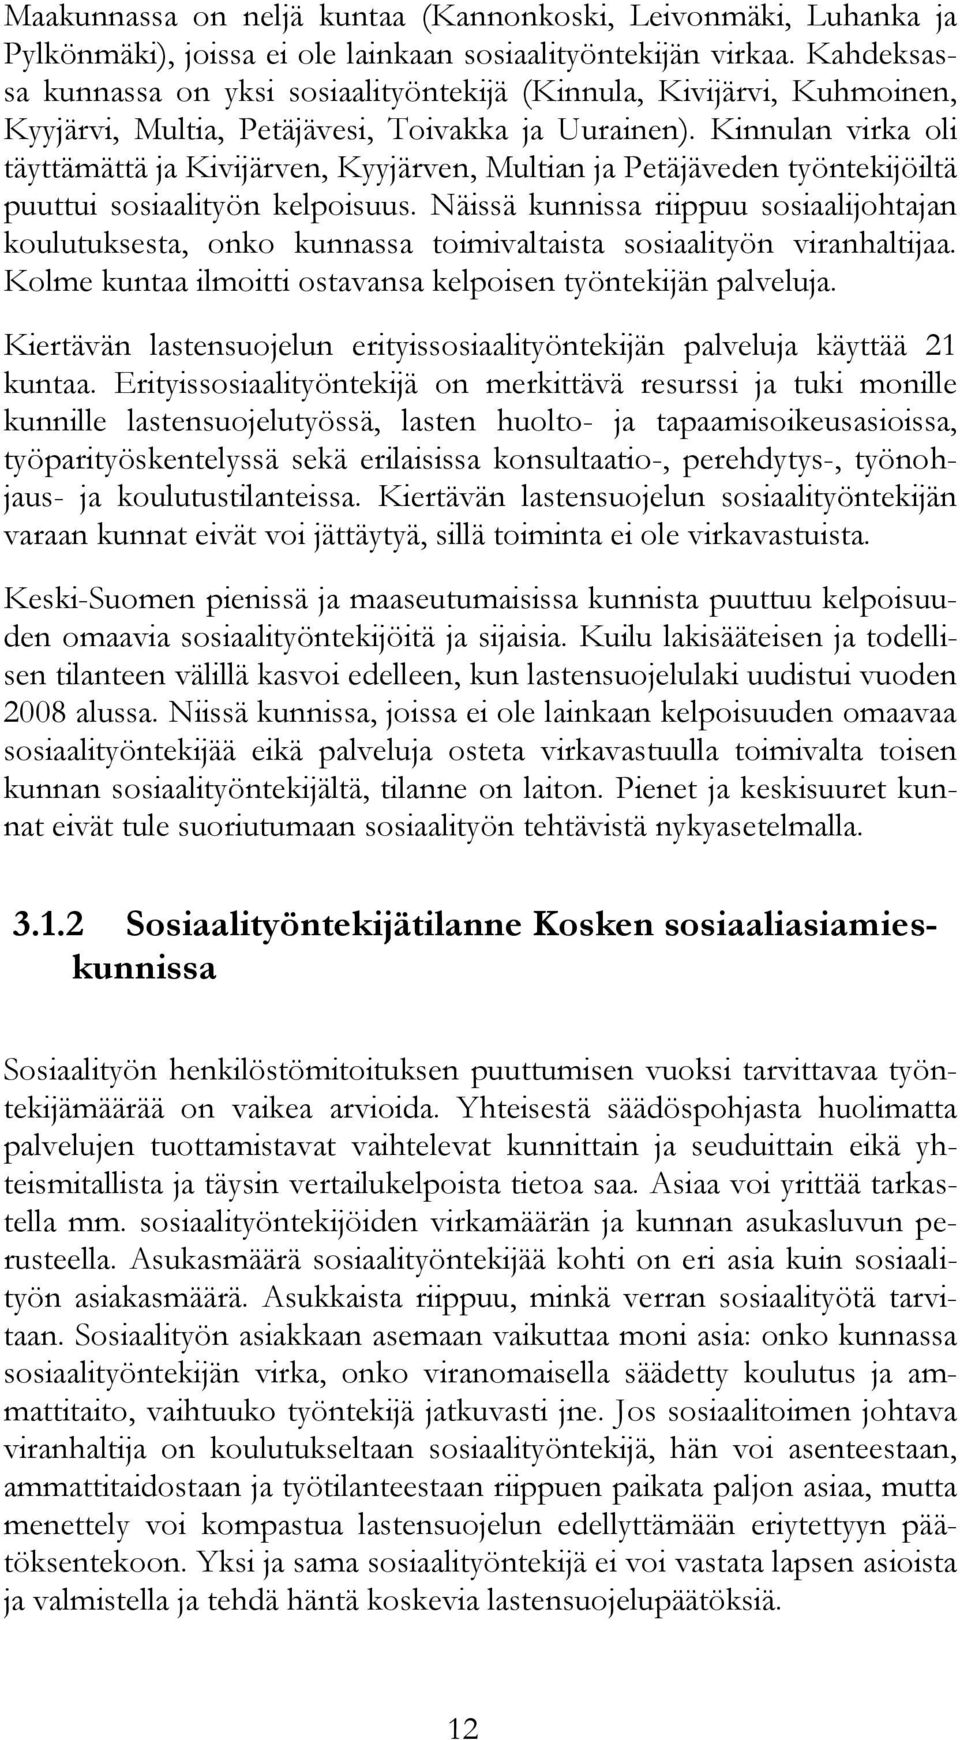 Kinnulan virka oli täyttämättä ja Kivijärven, Kyyjärven, Multian ja Petäjäveden työntekijöiltä puuttui sosiaalityön kelpoisuus.